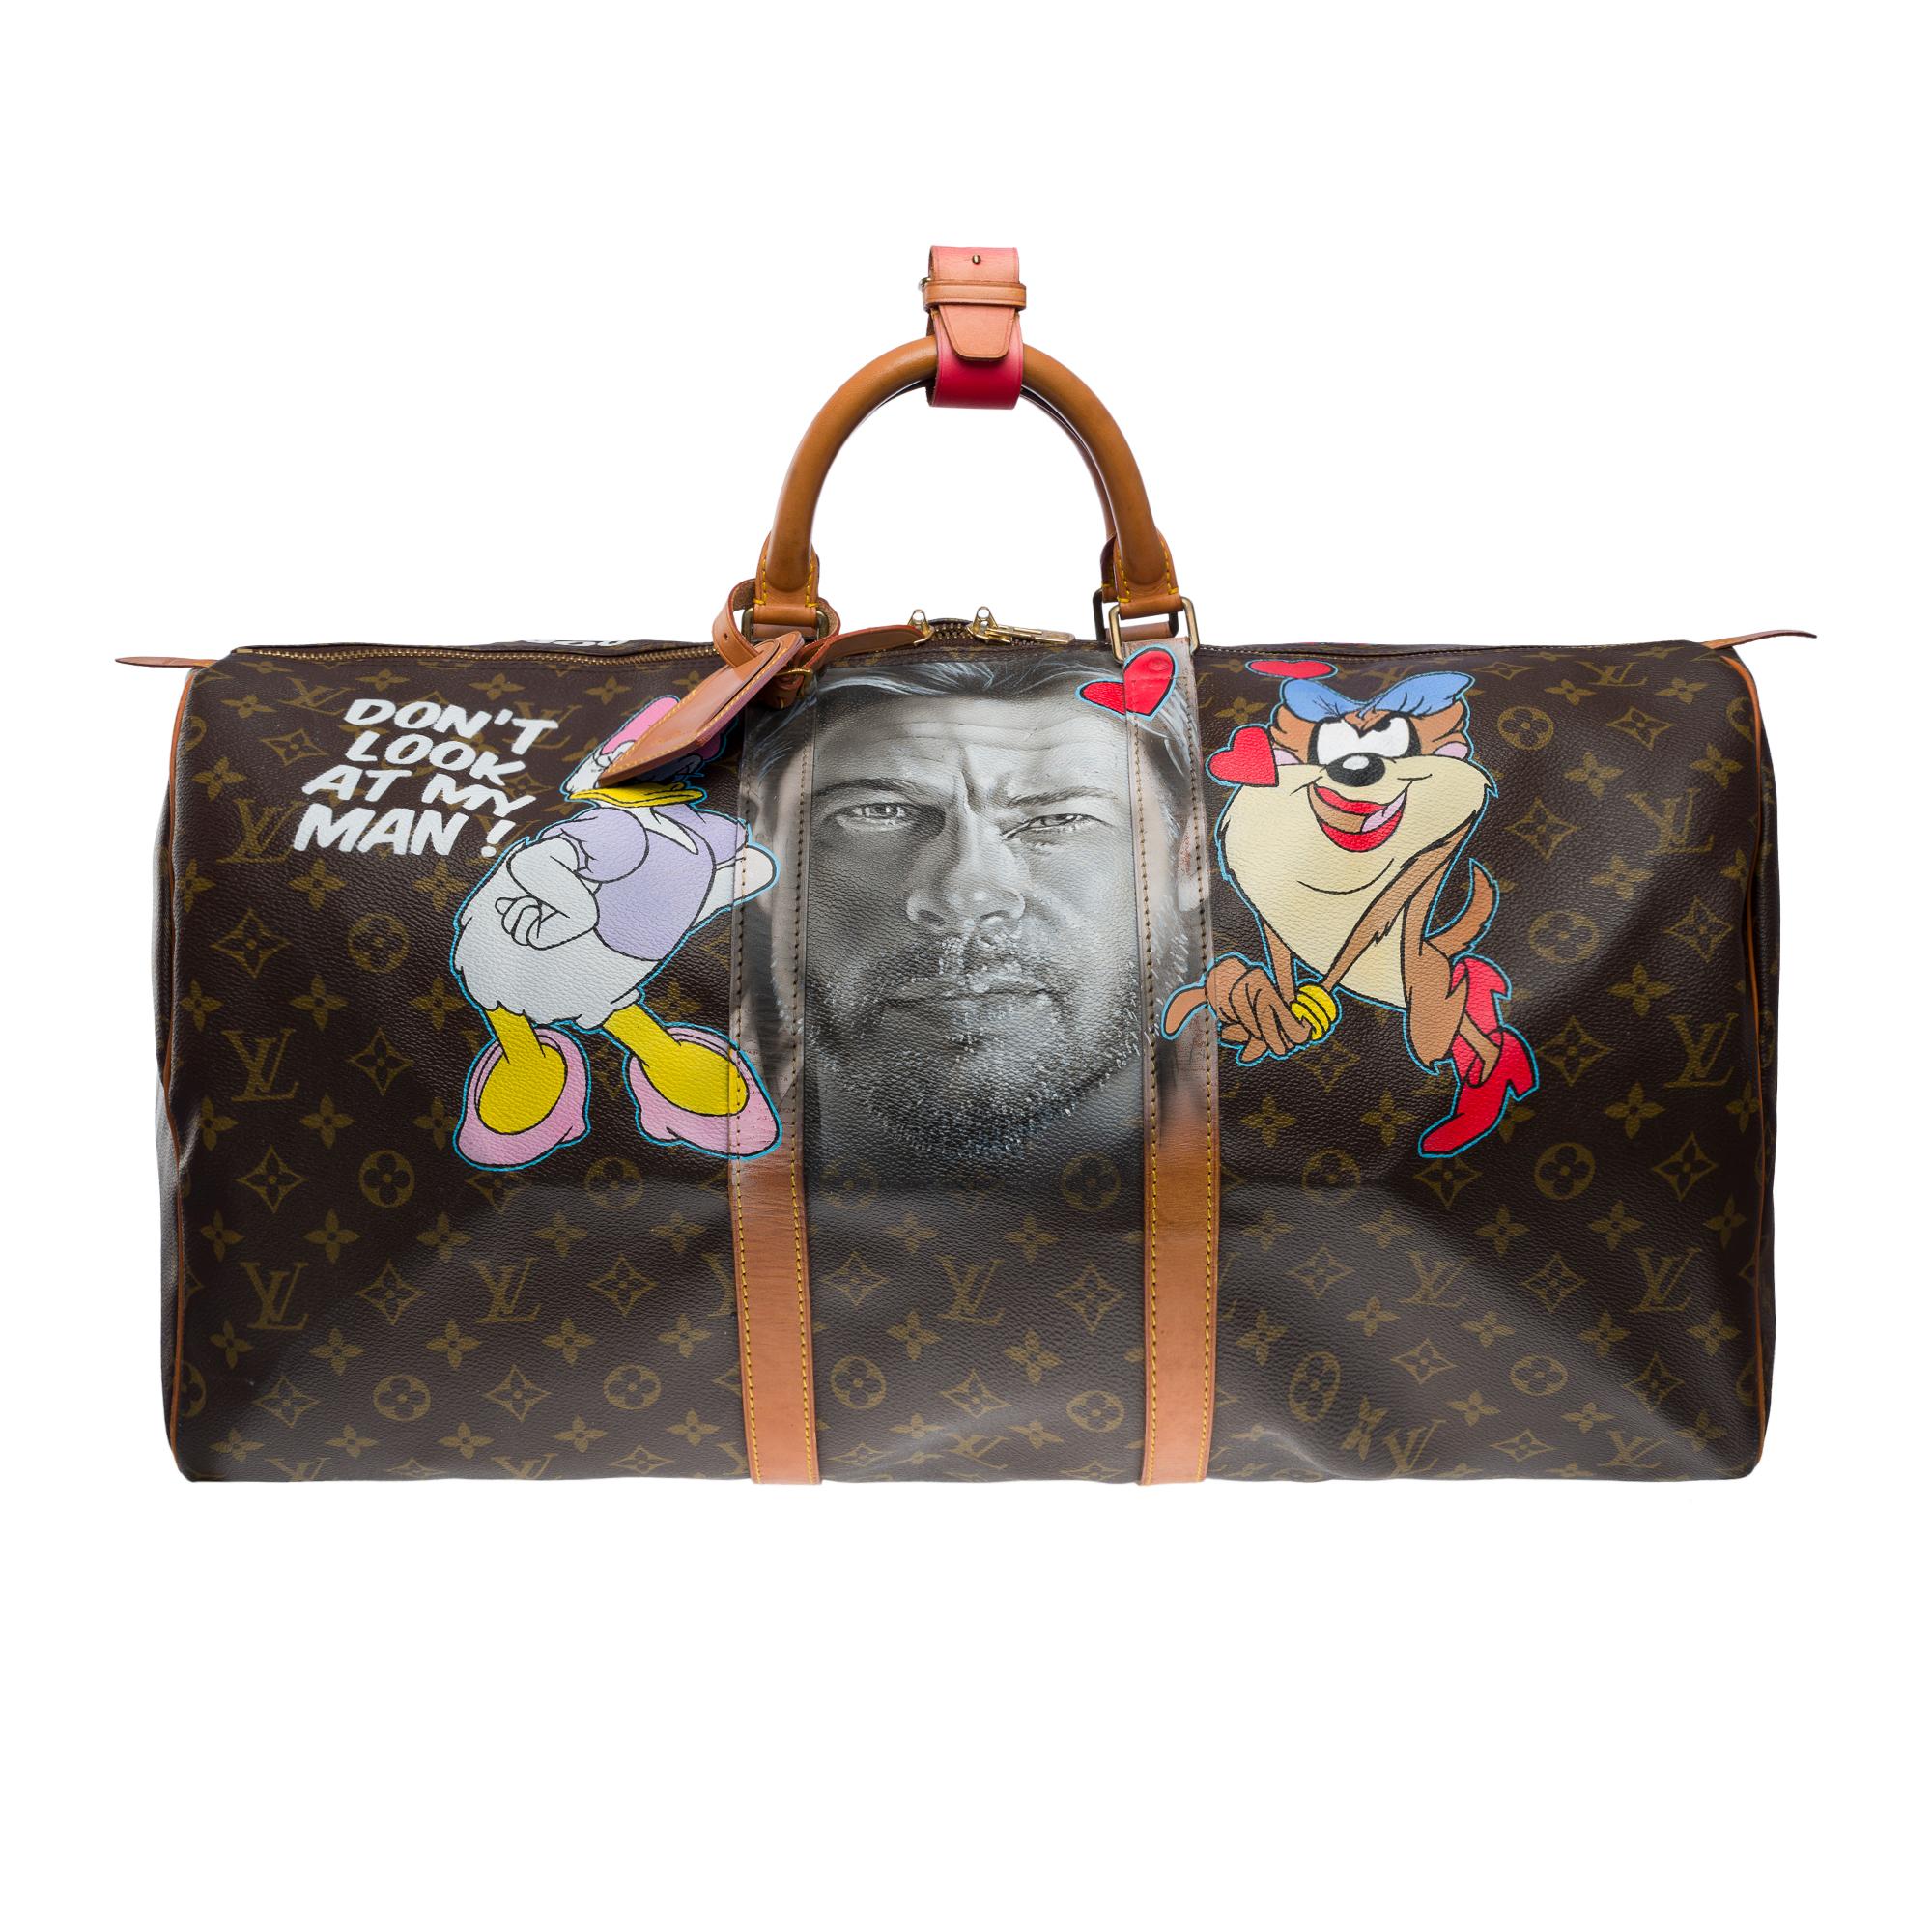 Etonnant sac de voyage Louis Vuitton Keepall 55 en toile monogramme marron personnalisé par l'artiste en vogue du Street Art PatBo 